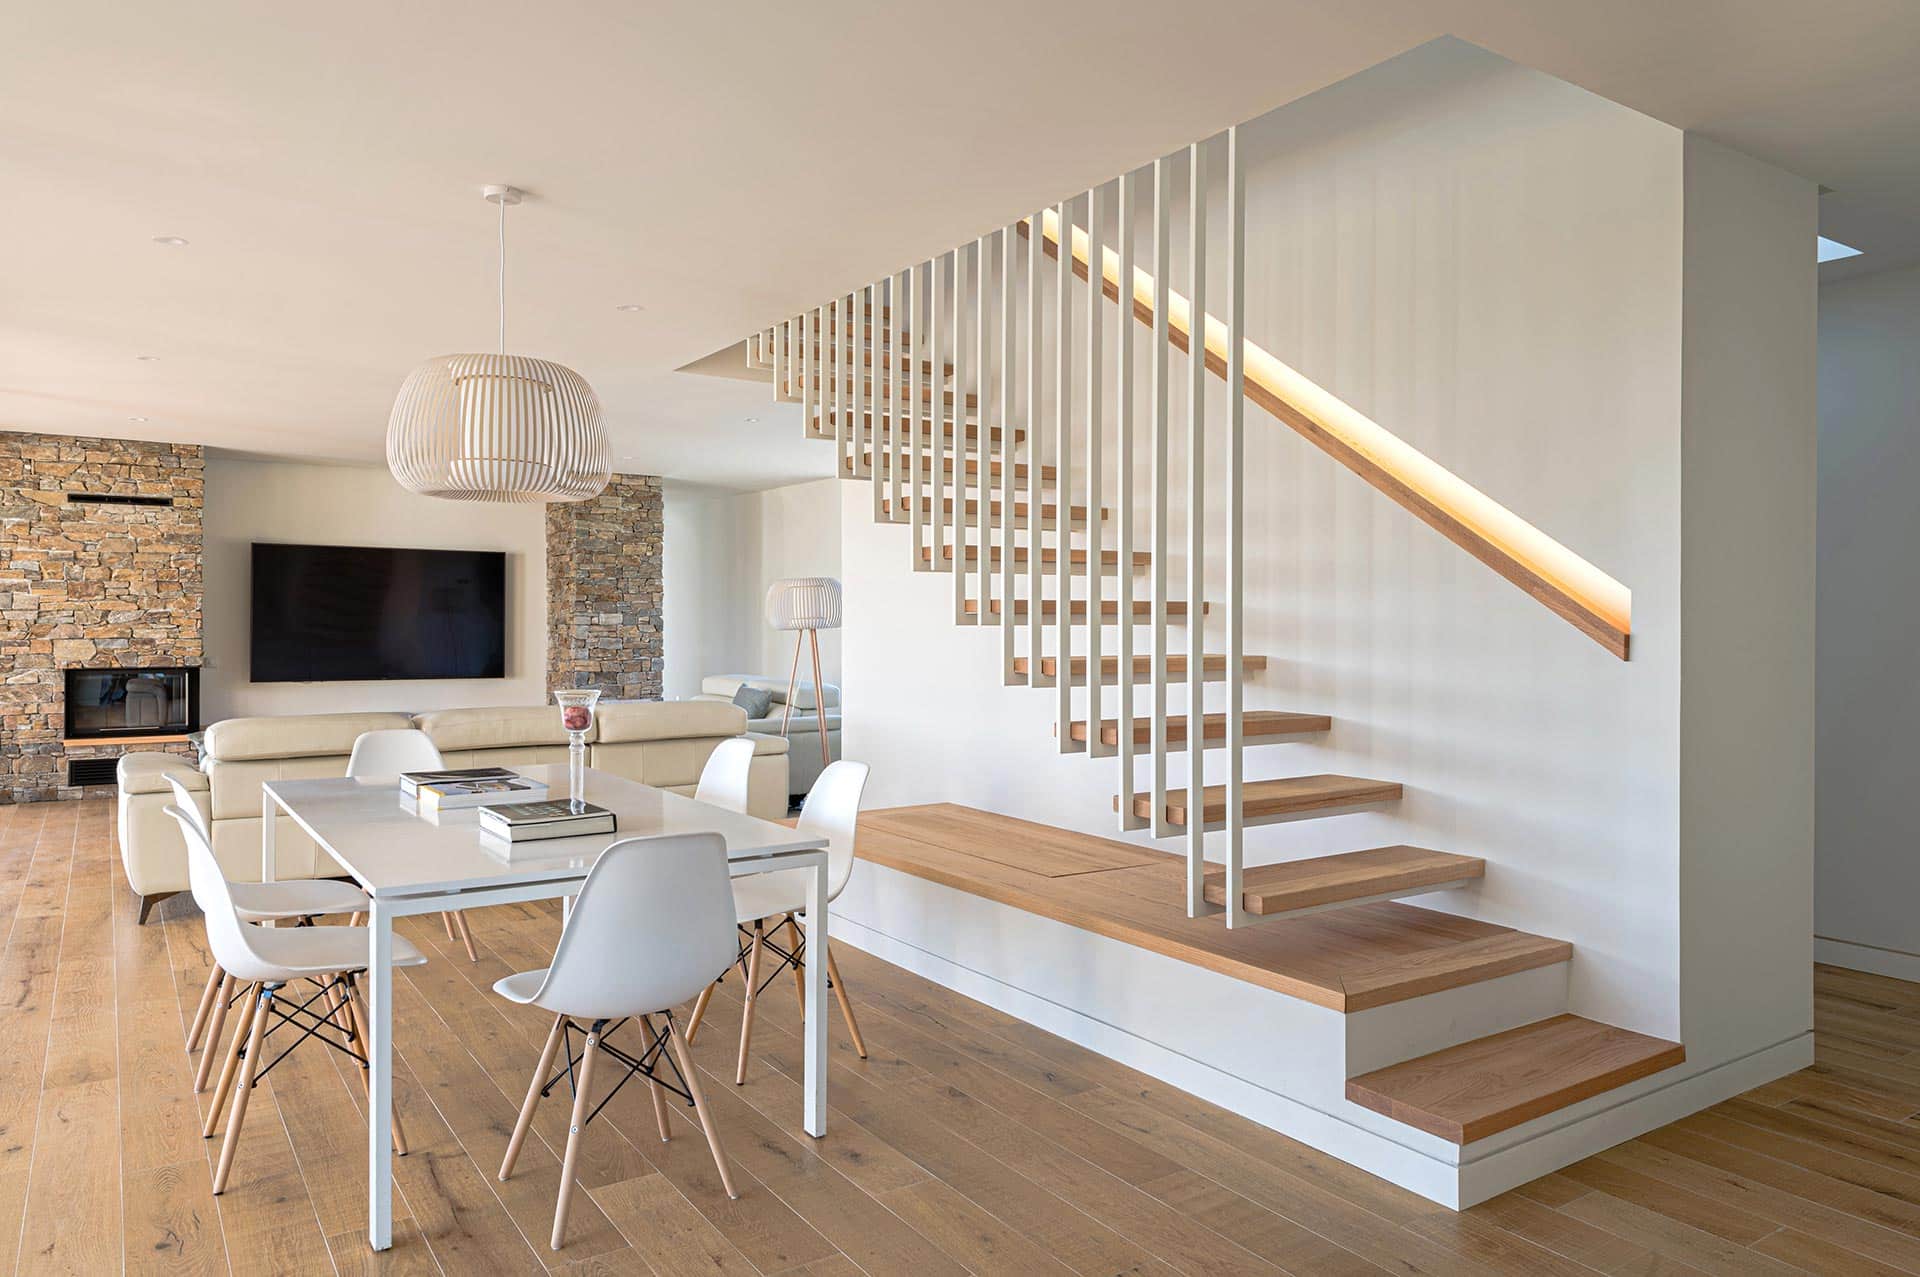 Escalera de salón de vivienda moderna diseñada por Moah Arquitectos en Cantabria